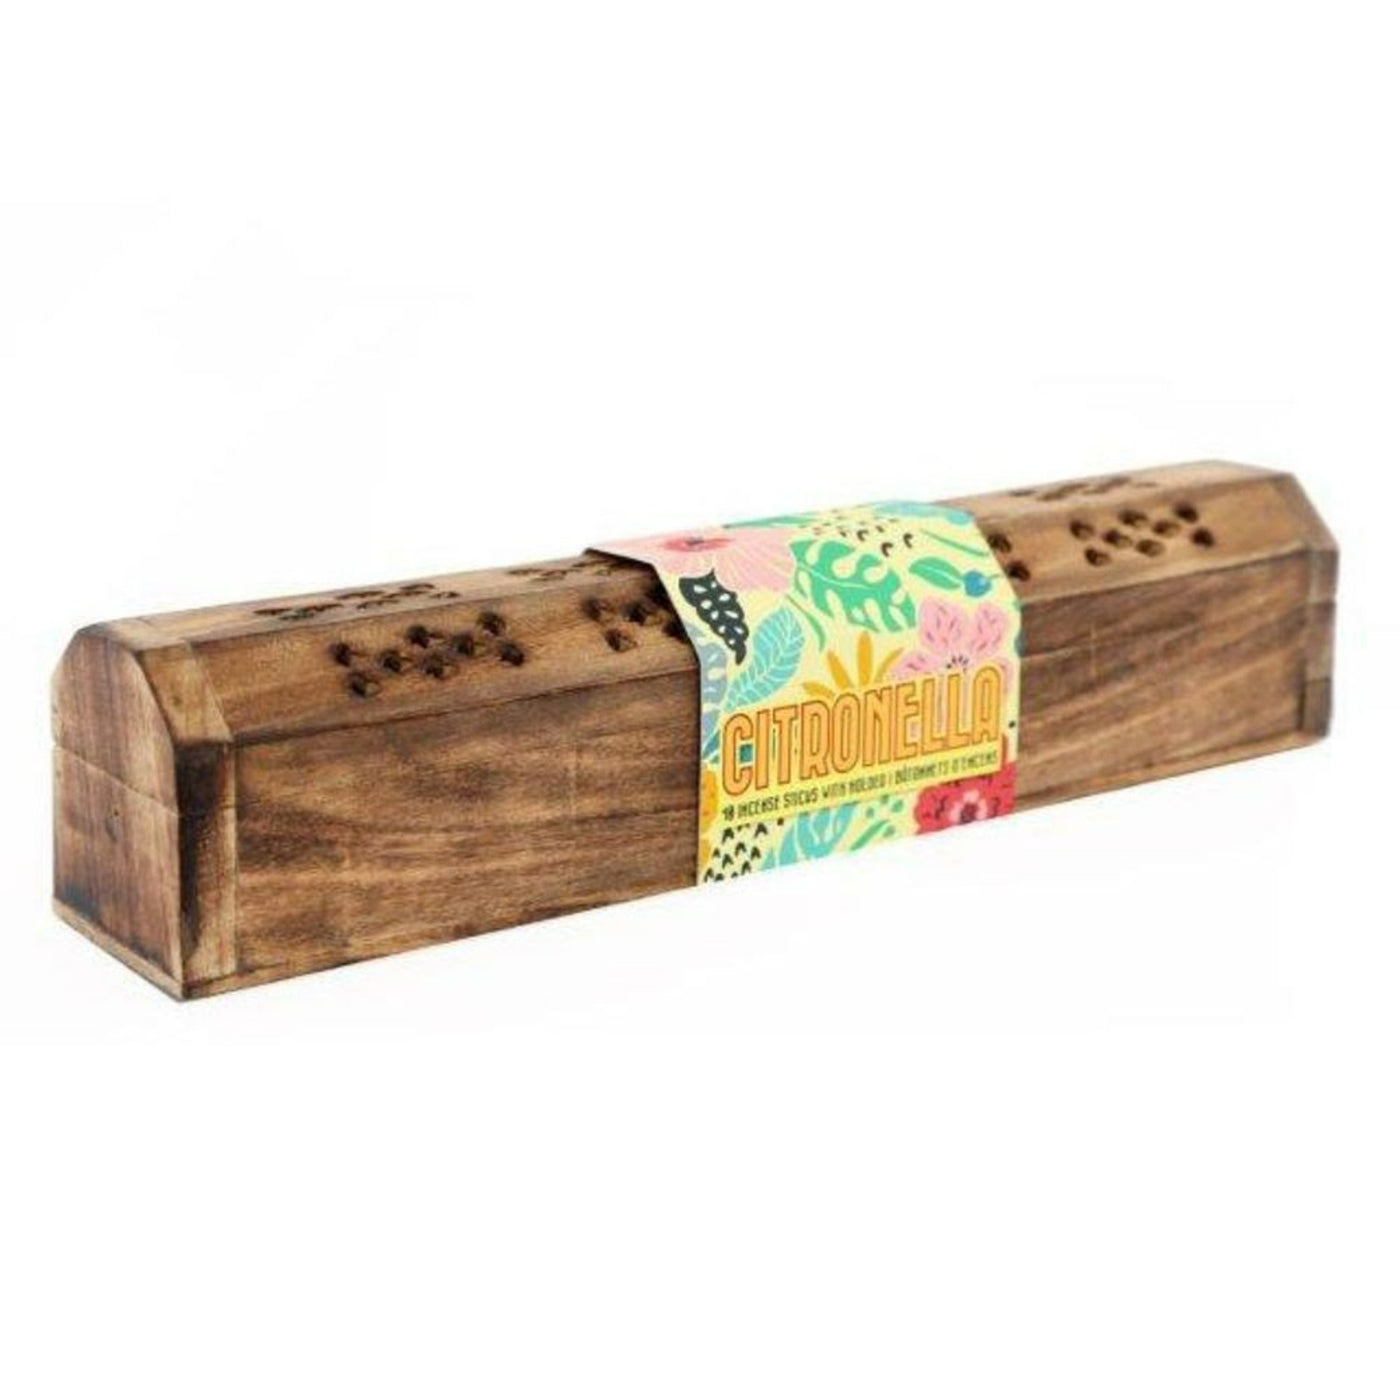 Citronella Wooden Incense Stick Gift Box Set